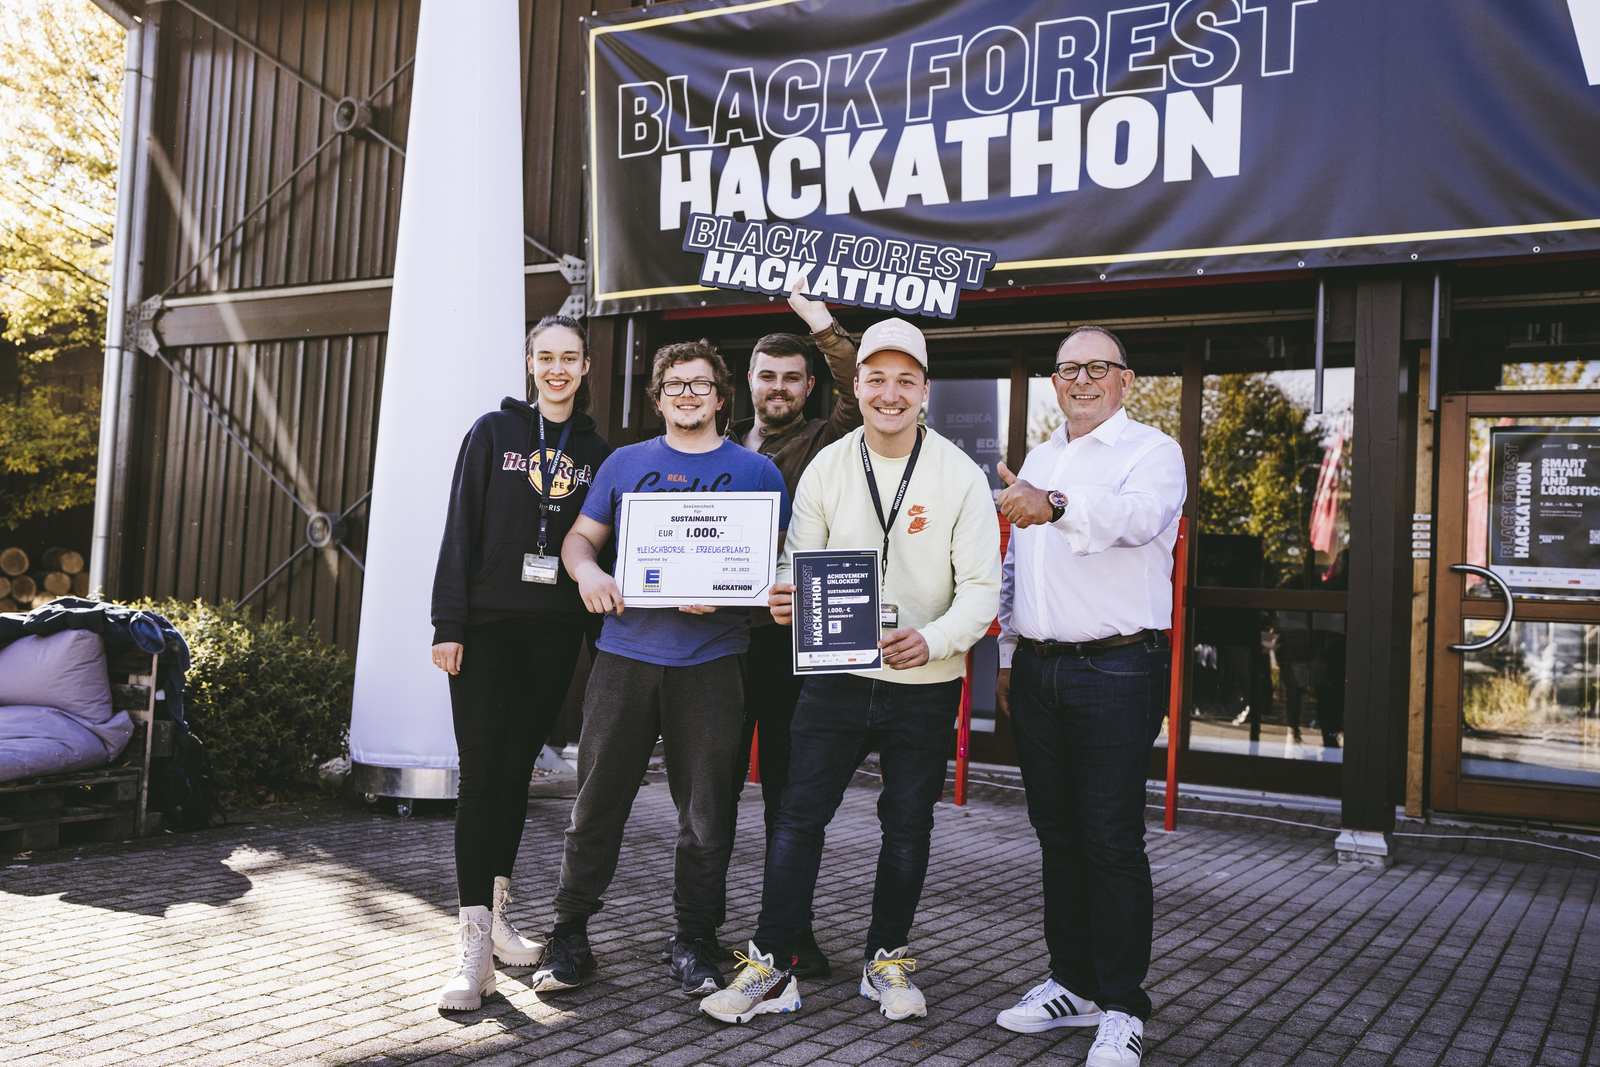 Das Gewinnerteam präsentiert vor einem Gebäude mit dem Banner Black Forest Hackathon seinen Siegerscheck und